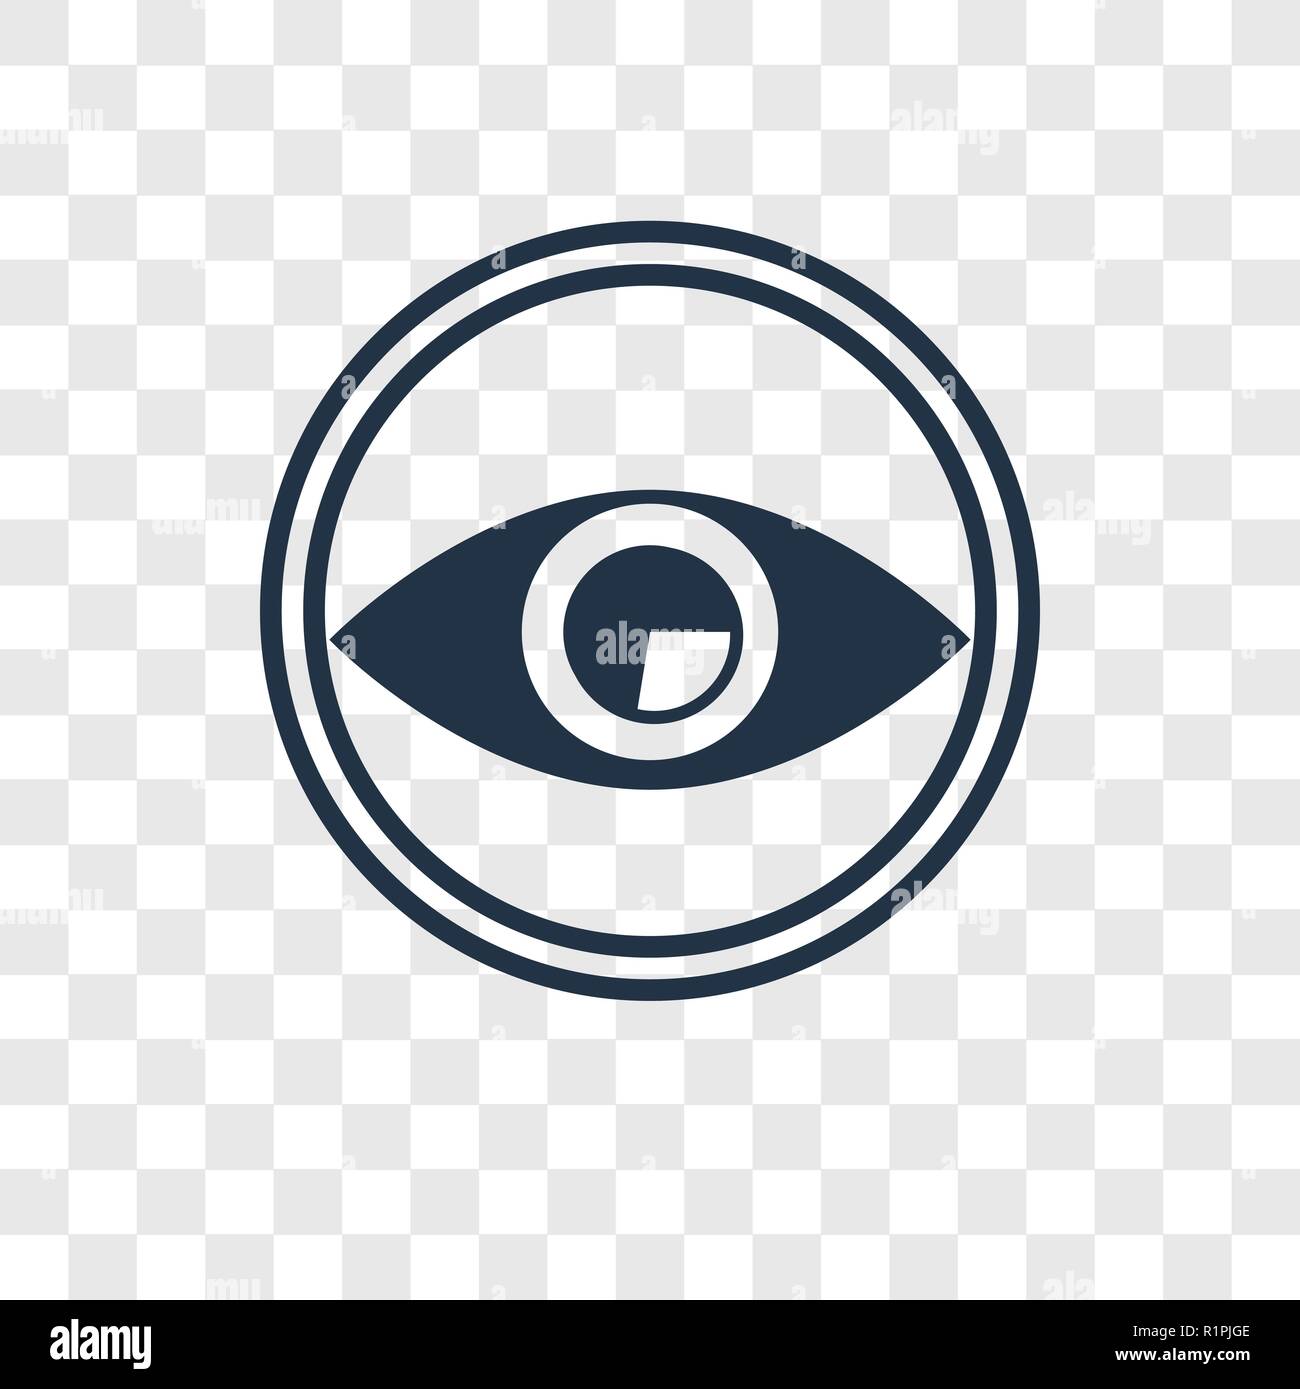 Auge vektor Icon auf transparentem Hintergrund isoliert, Auge Transparenz logo Konzept Stock Vektor